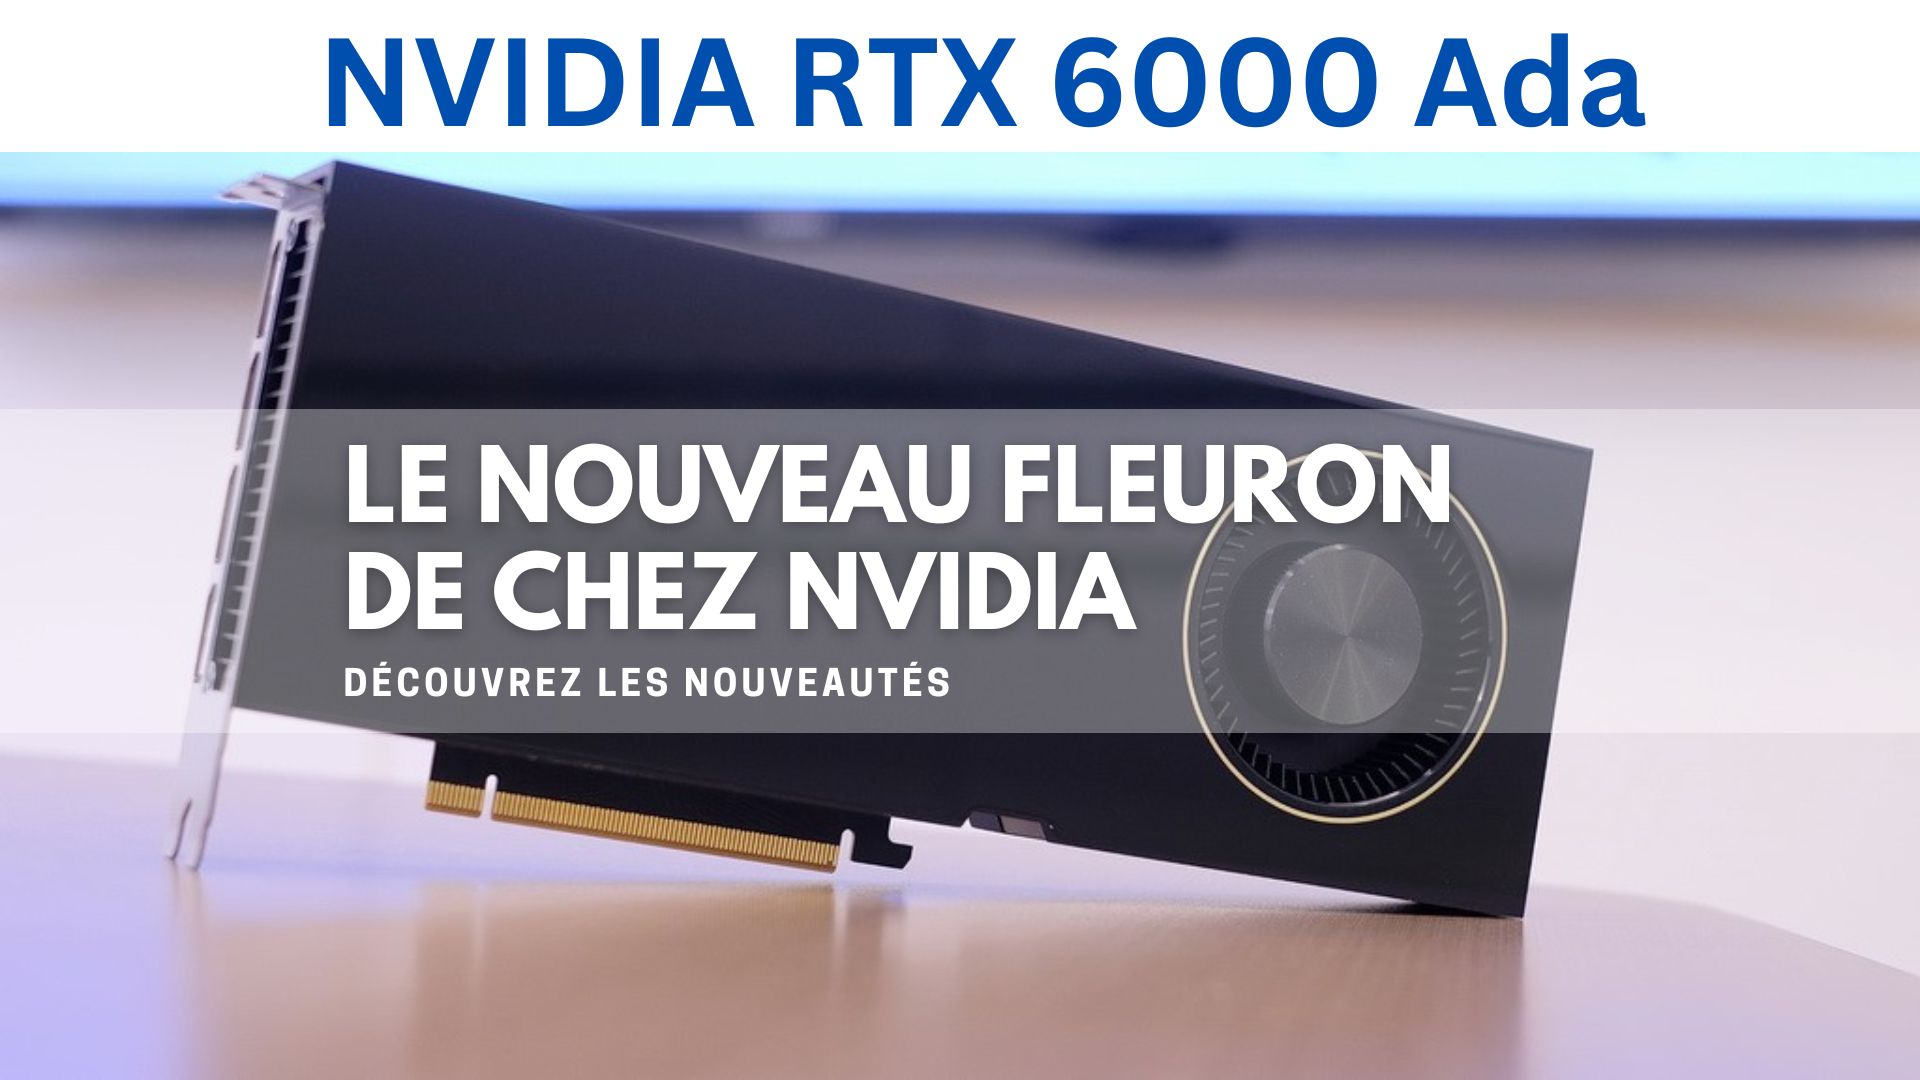 NVIDIA RTX 600 Ada